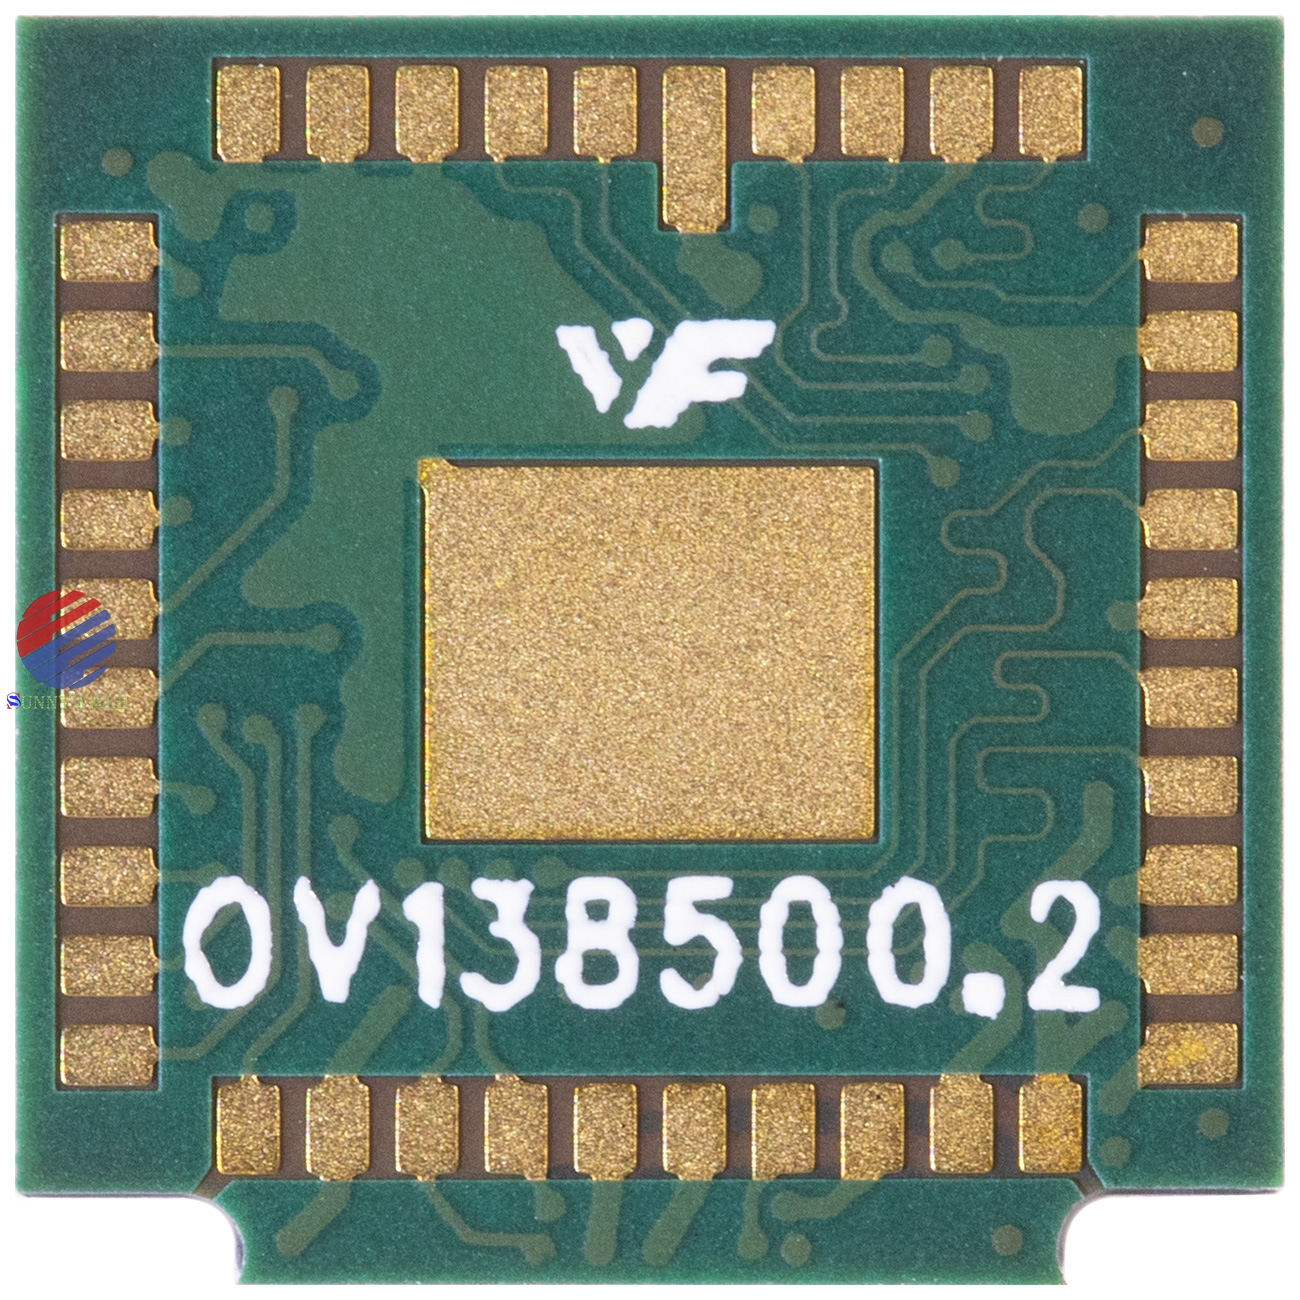 OV13850, OmniVision13MP CMOS image Sensor, 24 frame 10 bit 4 channel MIPI interface image sensor, 13 million pixel mobile camera module sensor chip, OV13MP CMOS image sensor 